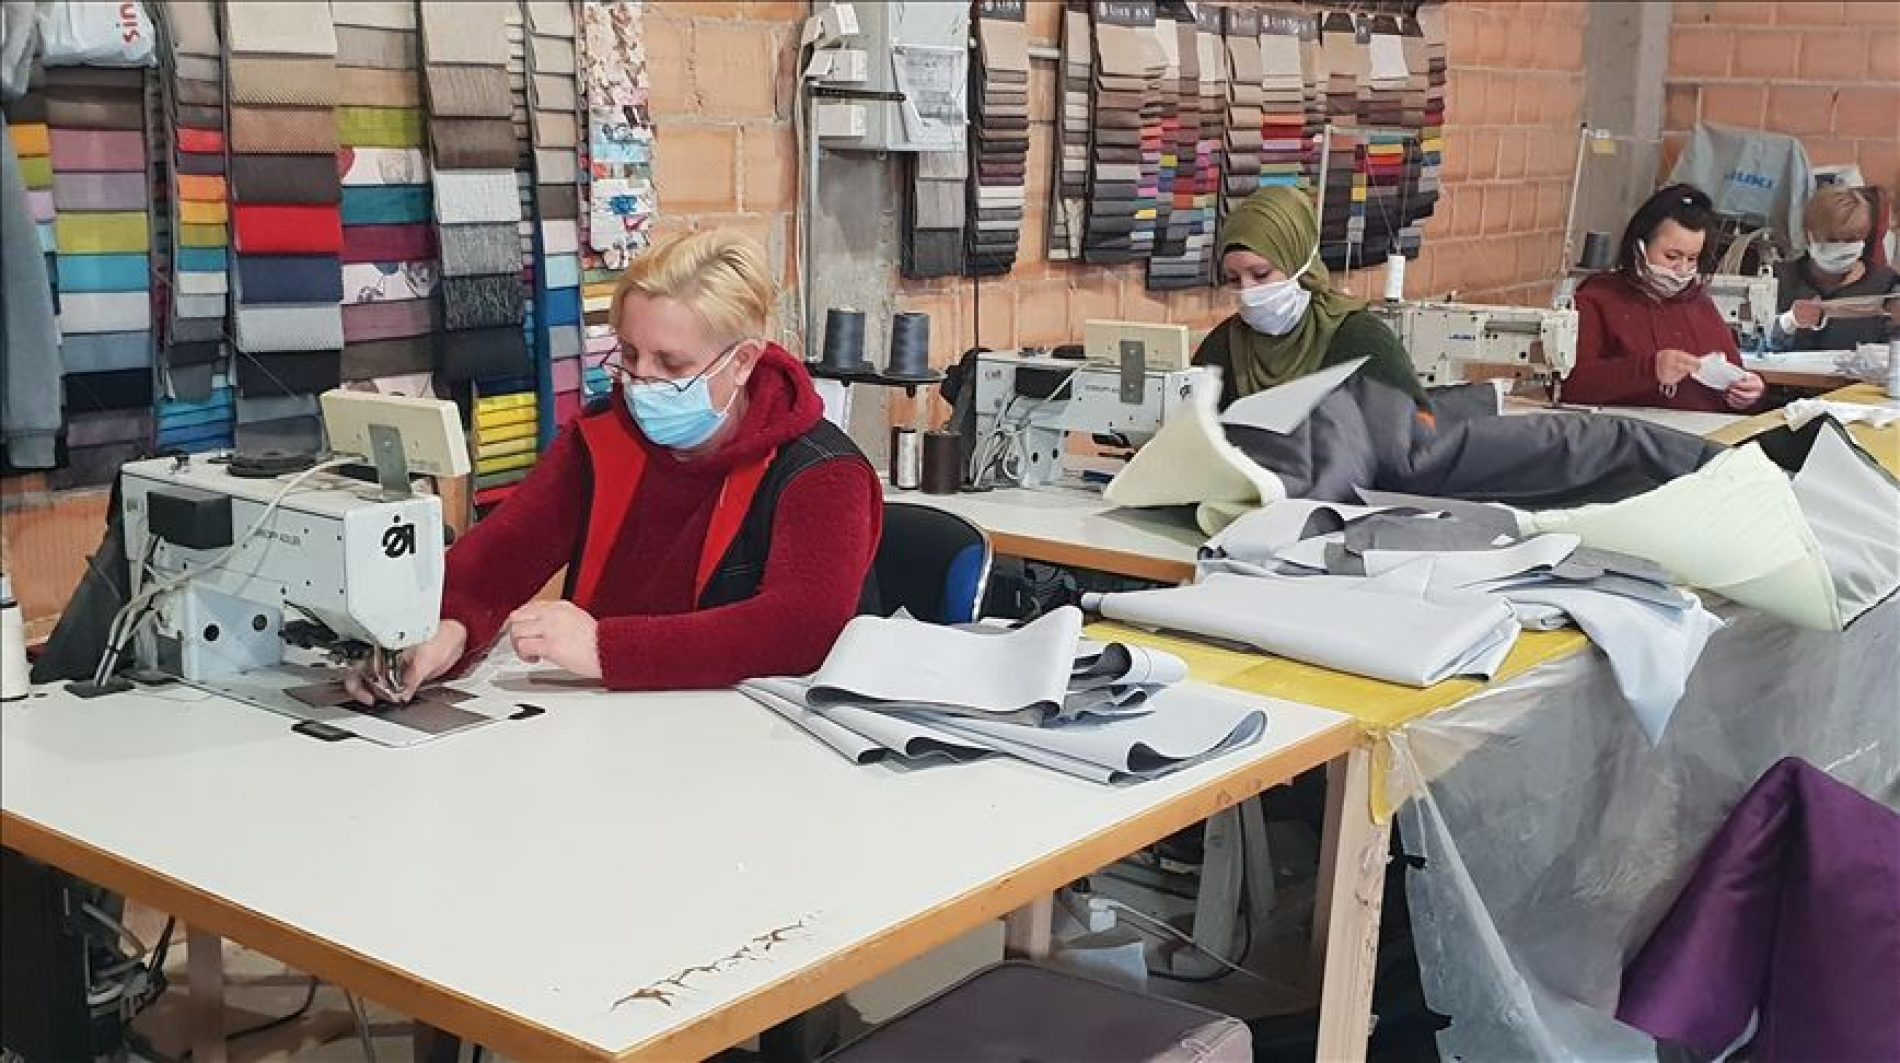 Firma Boha iz Zenice preorjentisala proizvodnju: Počeli raditi zaštitne maske, u planu izrada i odijela